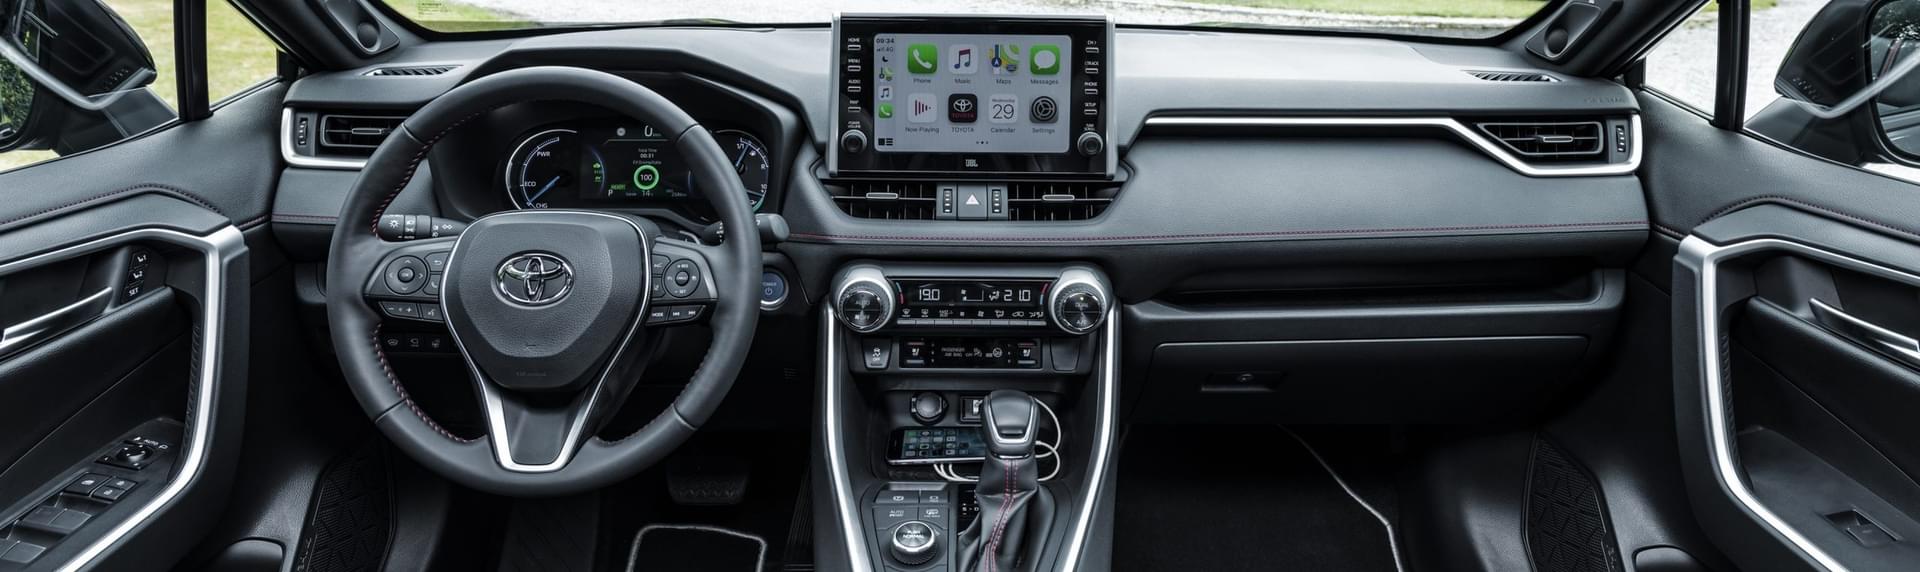 Toyota RAV4 Plug-In Hybrid interior